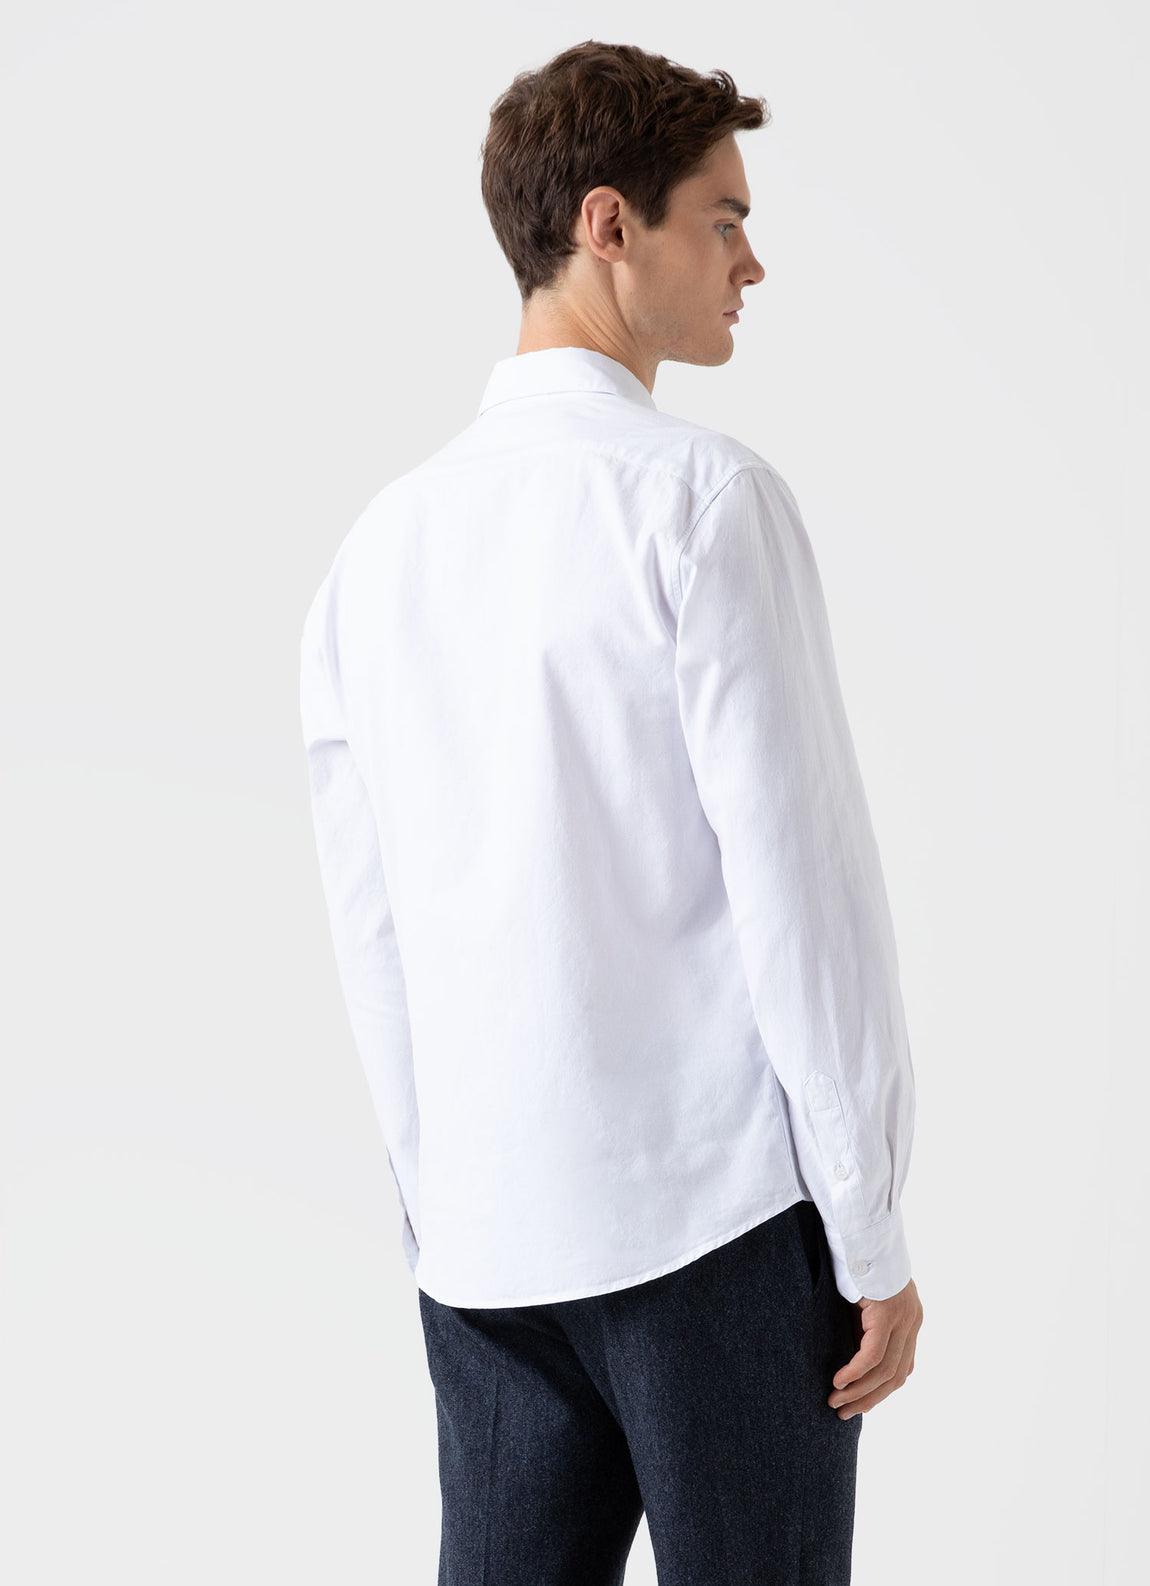 Men's Oxford Shirt in White | Sunspel